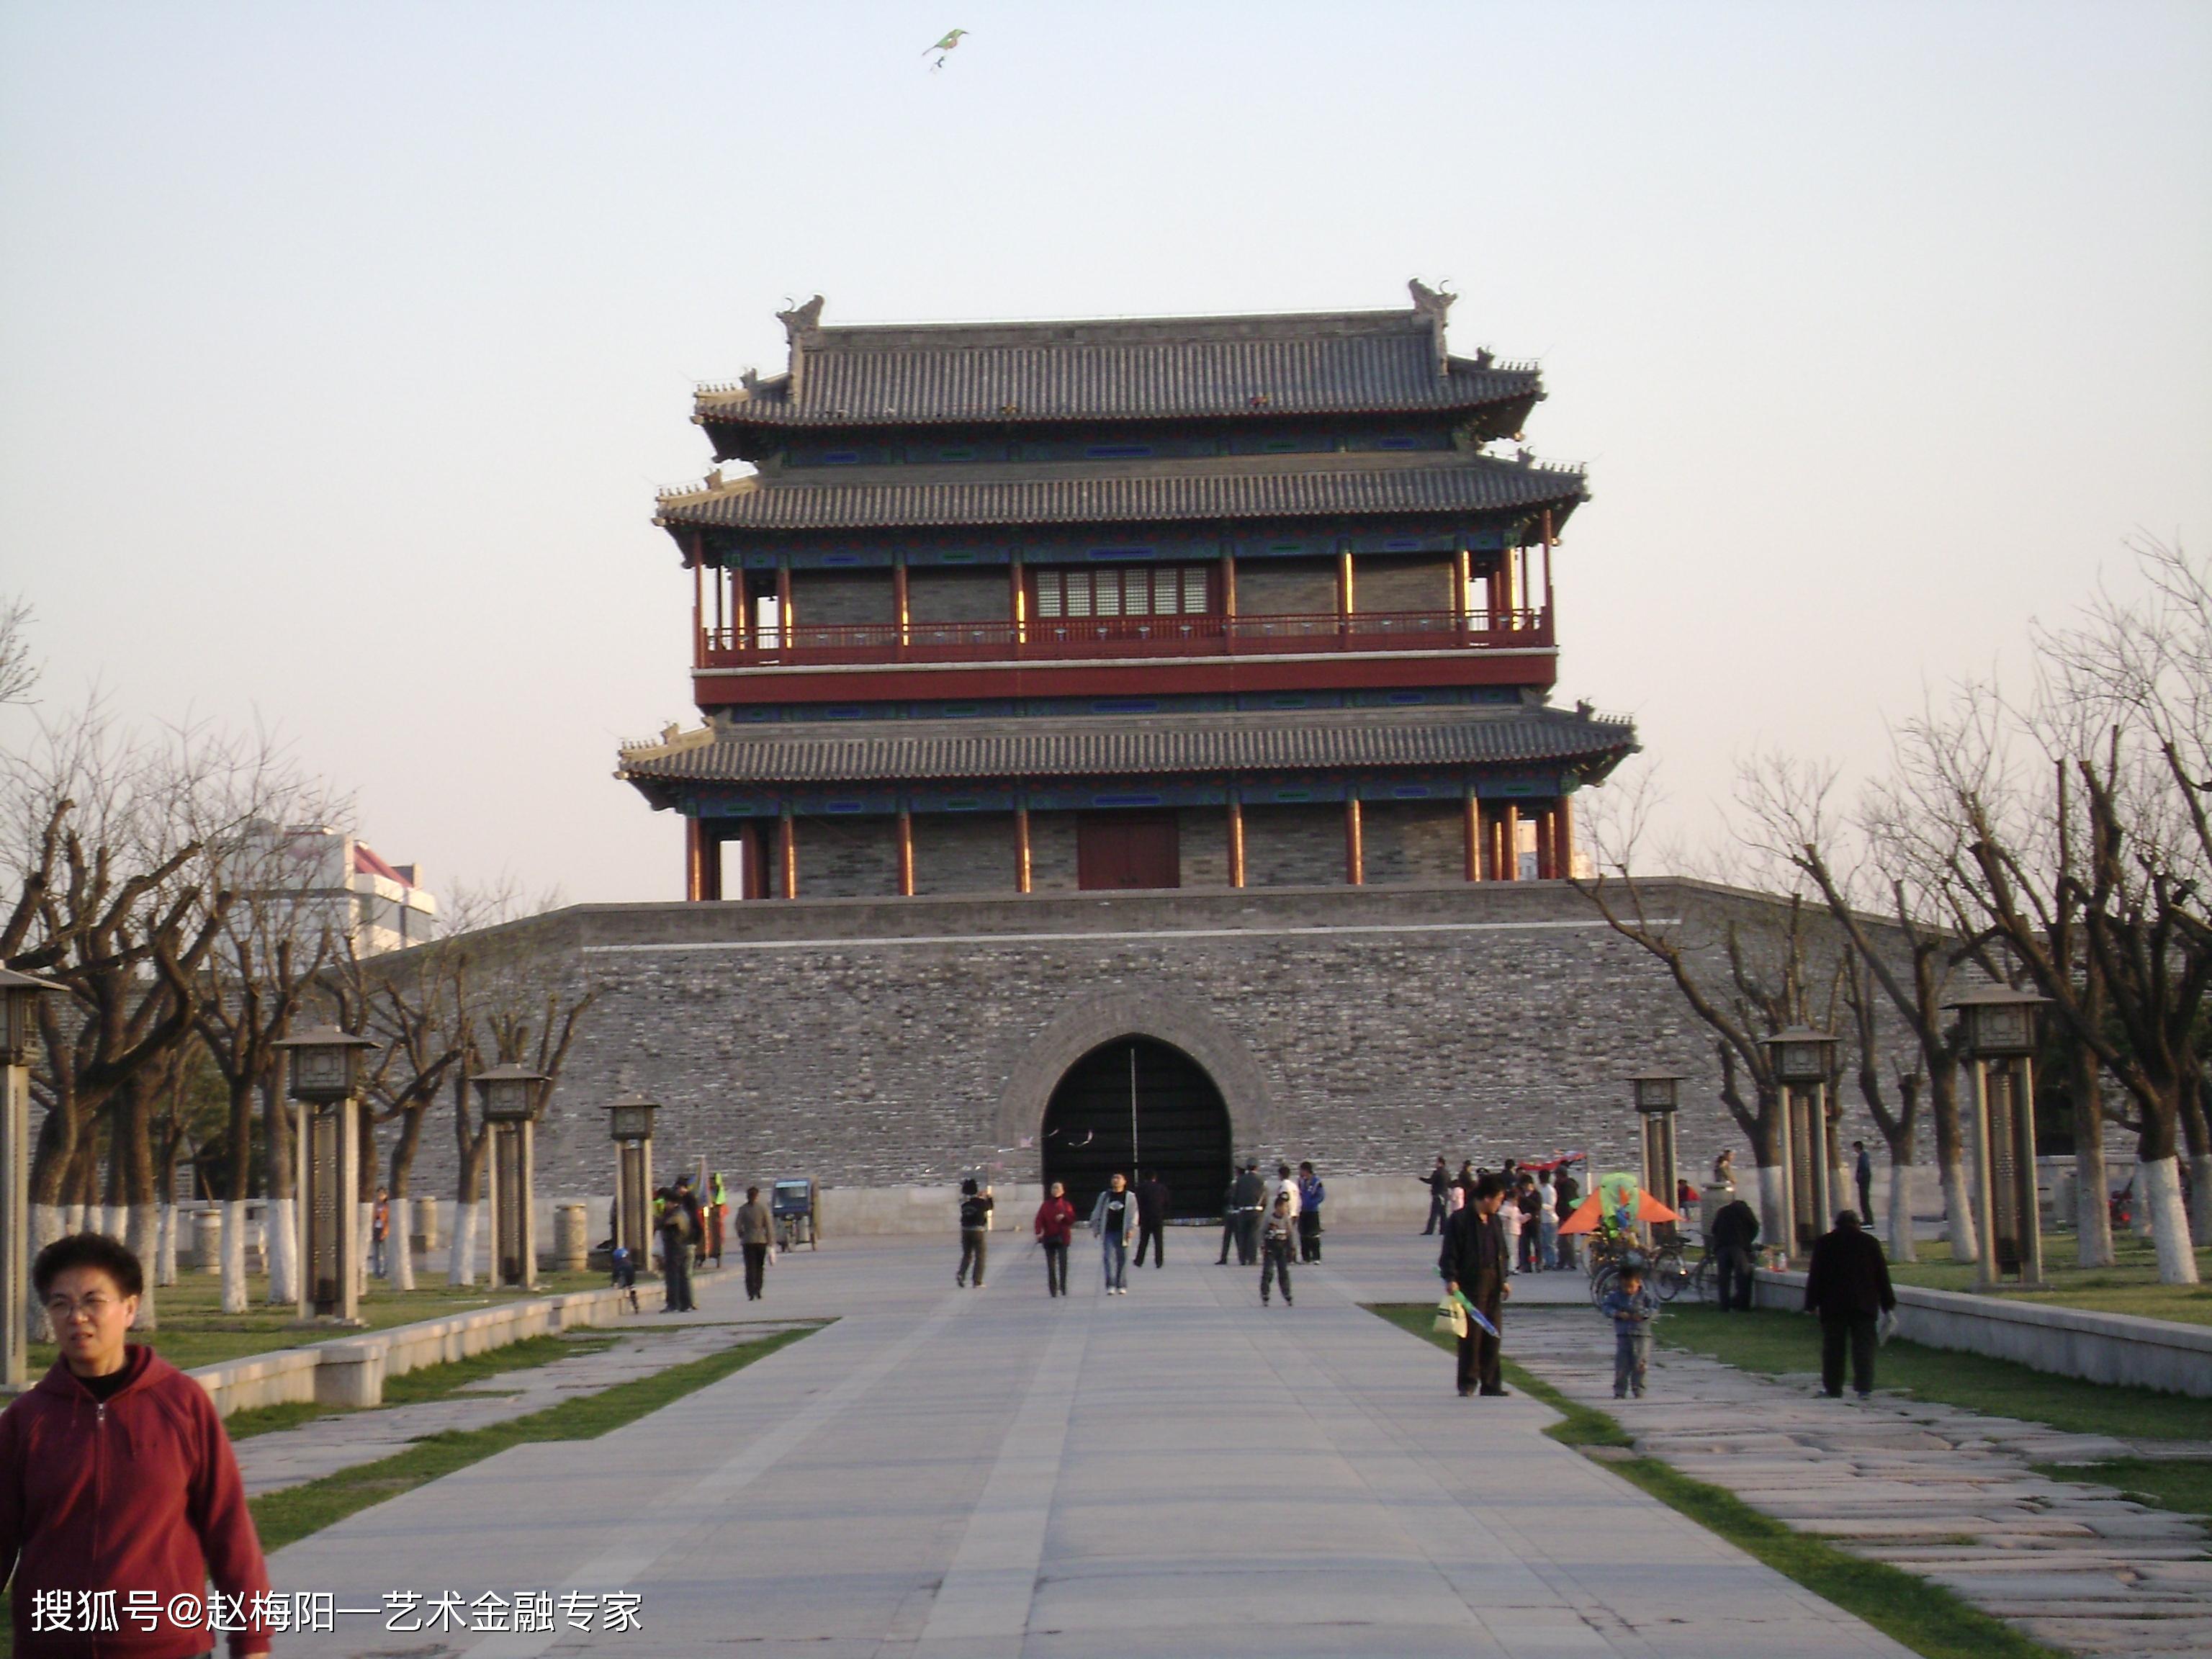 2007年4月8日,北京永定门,赵梅阳摄影